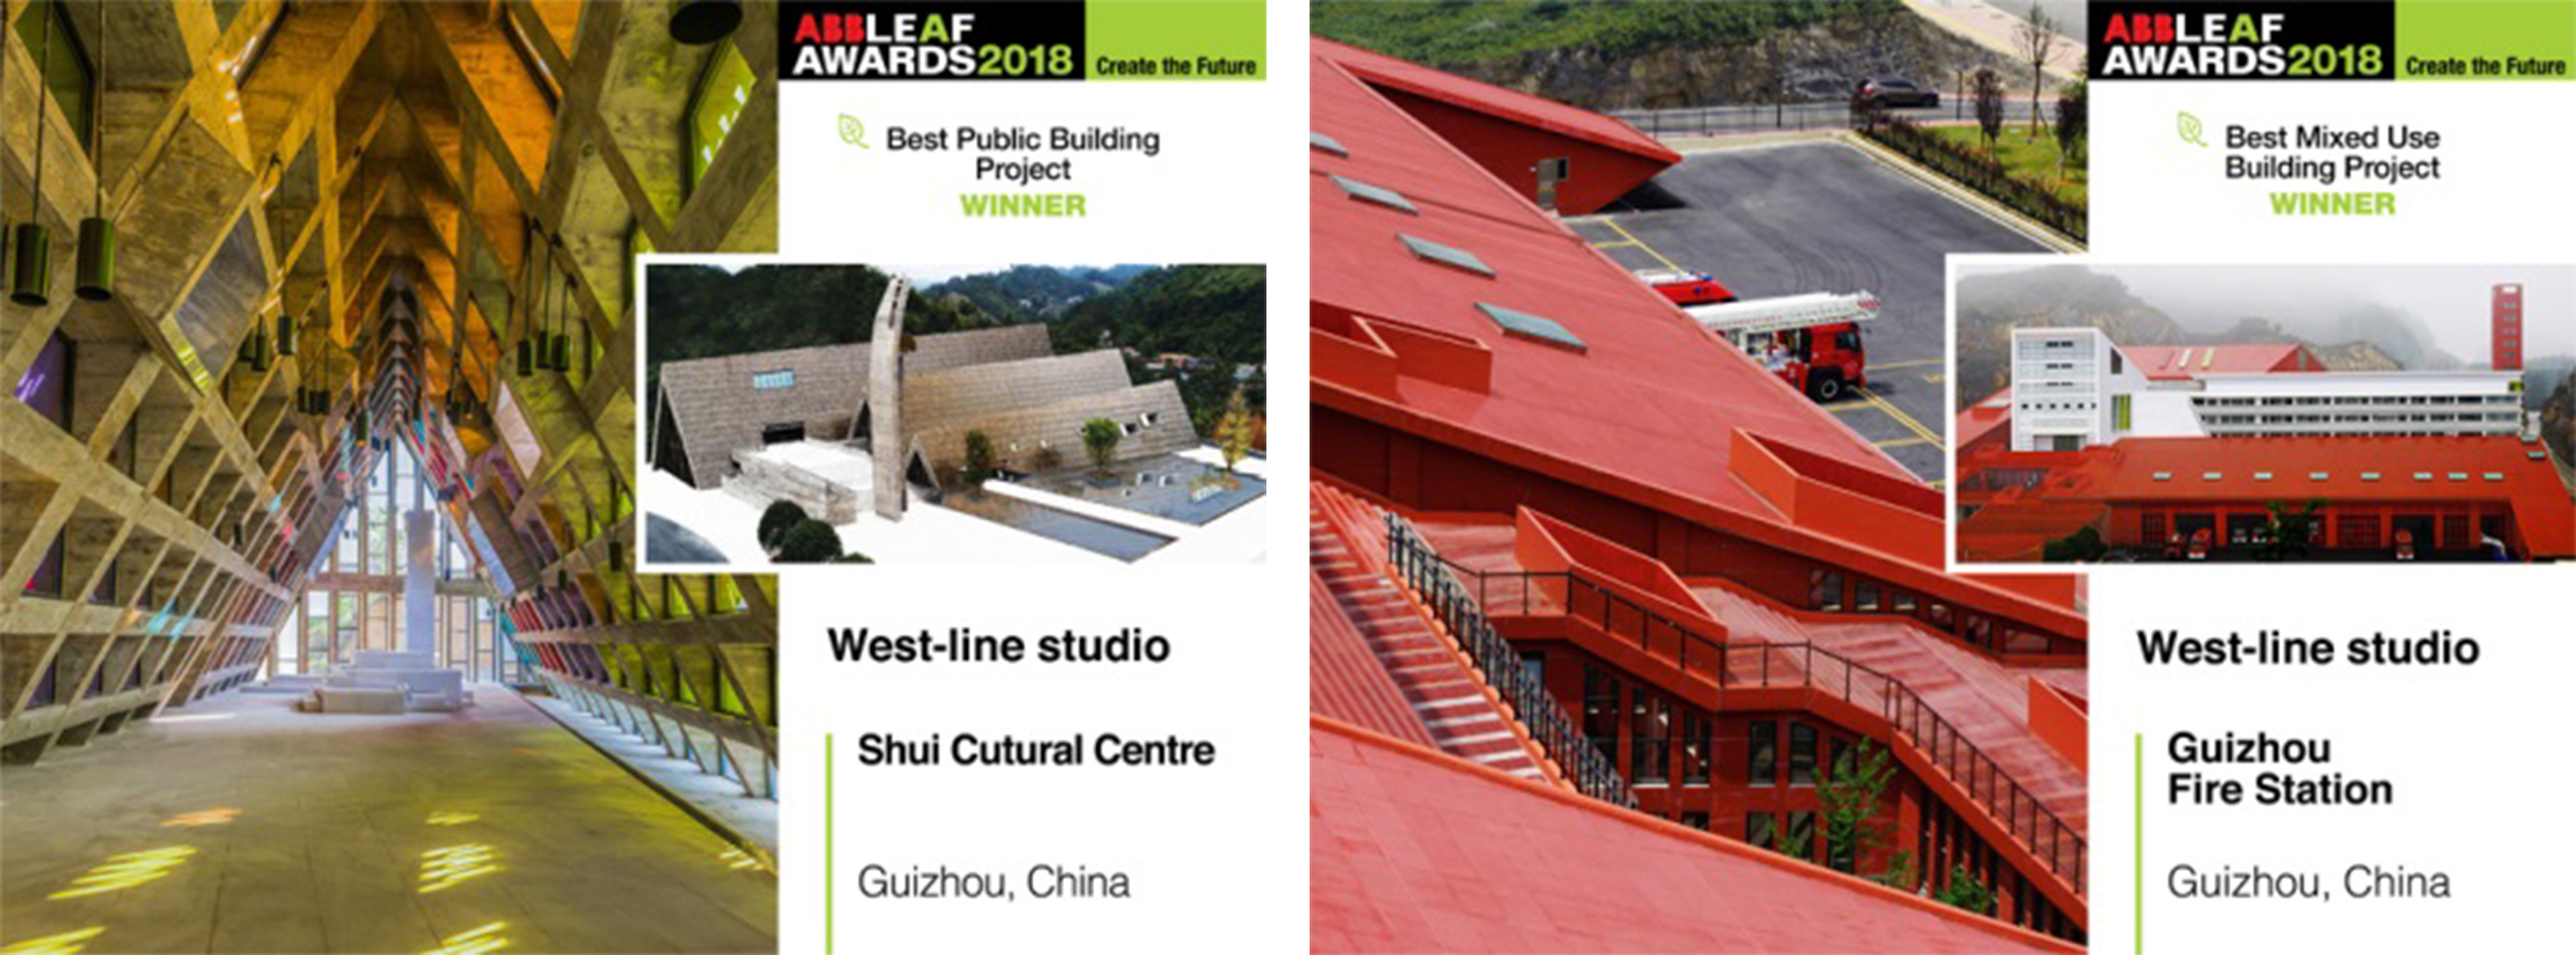 西线工作室荣膺世界著名的欧洲杰出建筑师奖两项最高奖